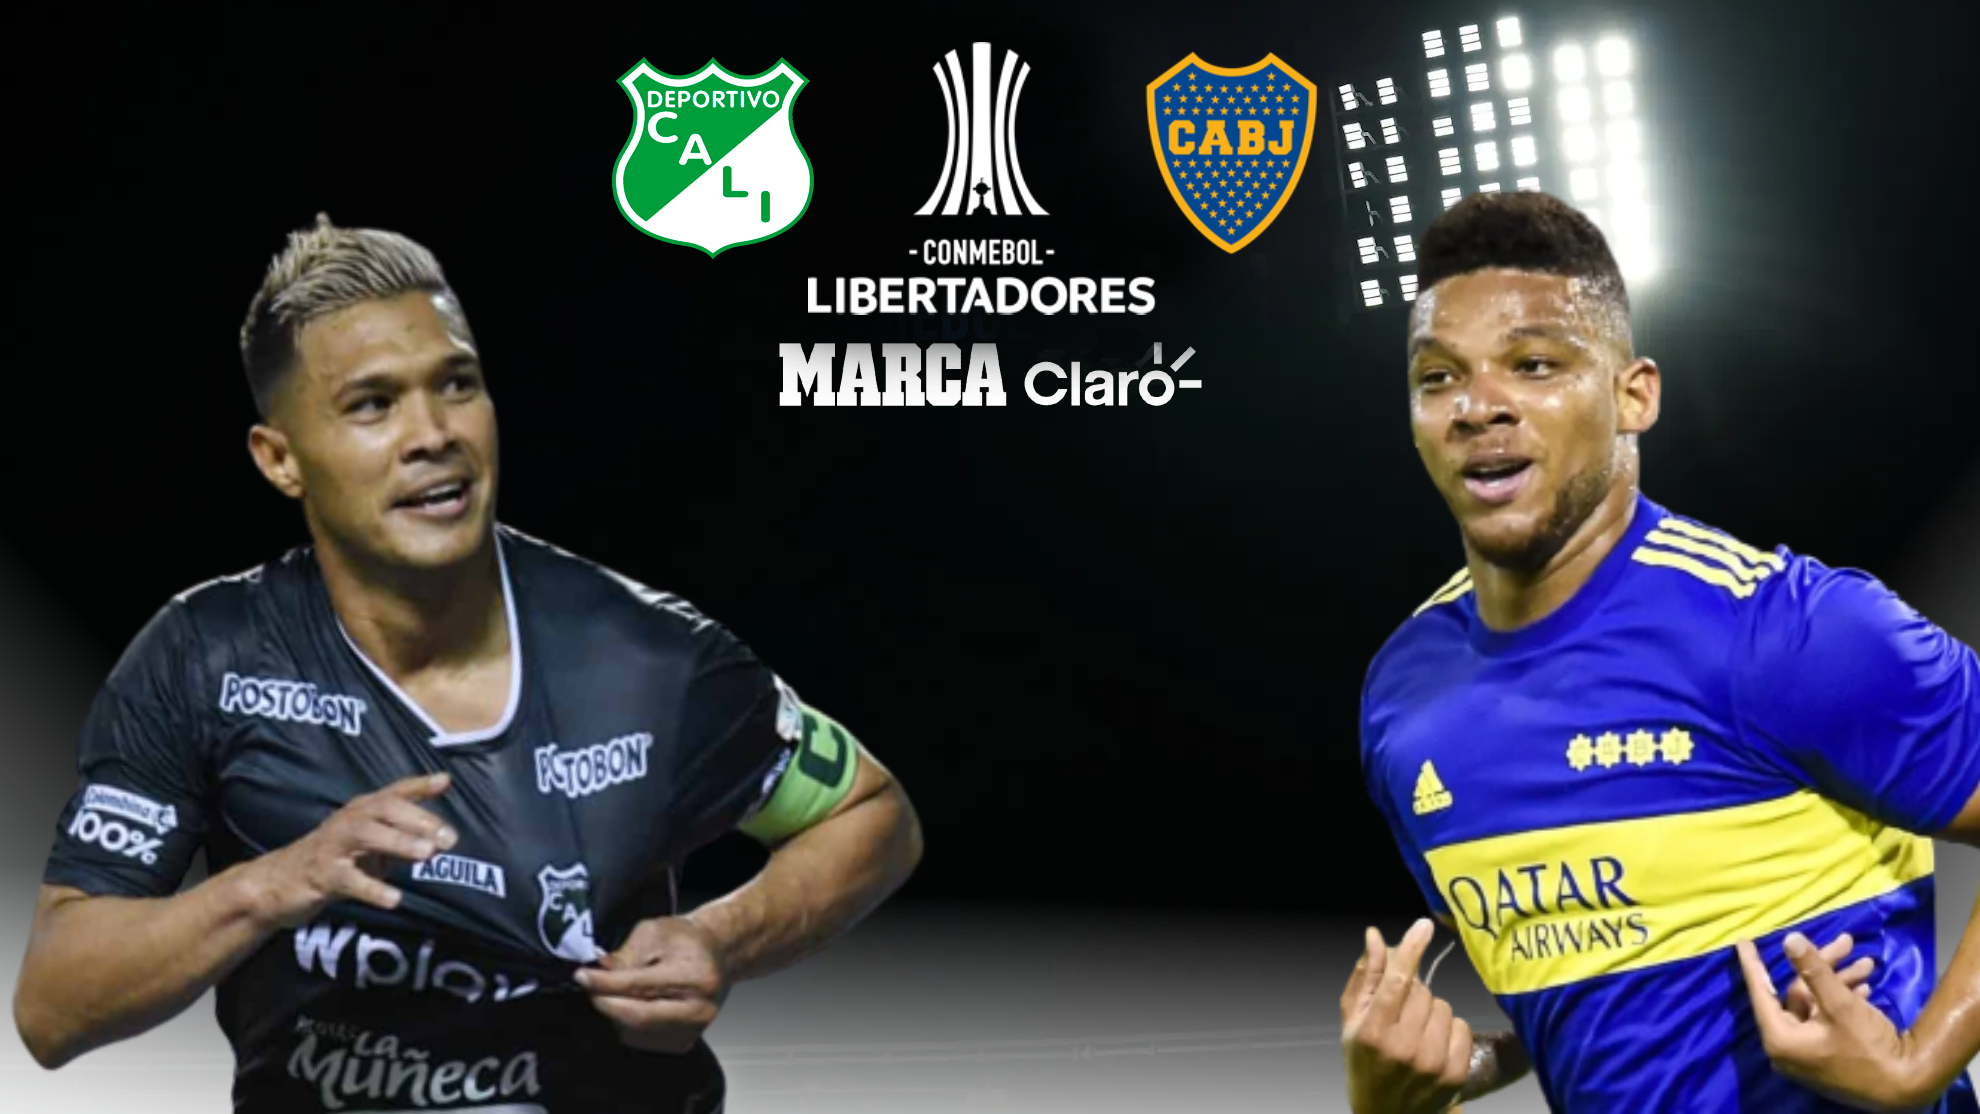 Partidos hoy: Resumen, resultado y goles de Deportivo Cali vs Boca Juniors: partido por la de grupos de la Copa Conmebol MARCA Claro Colombia